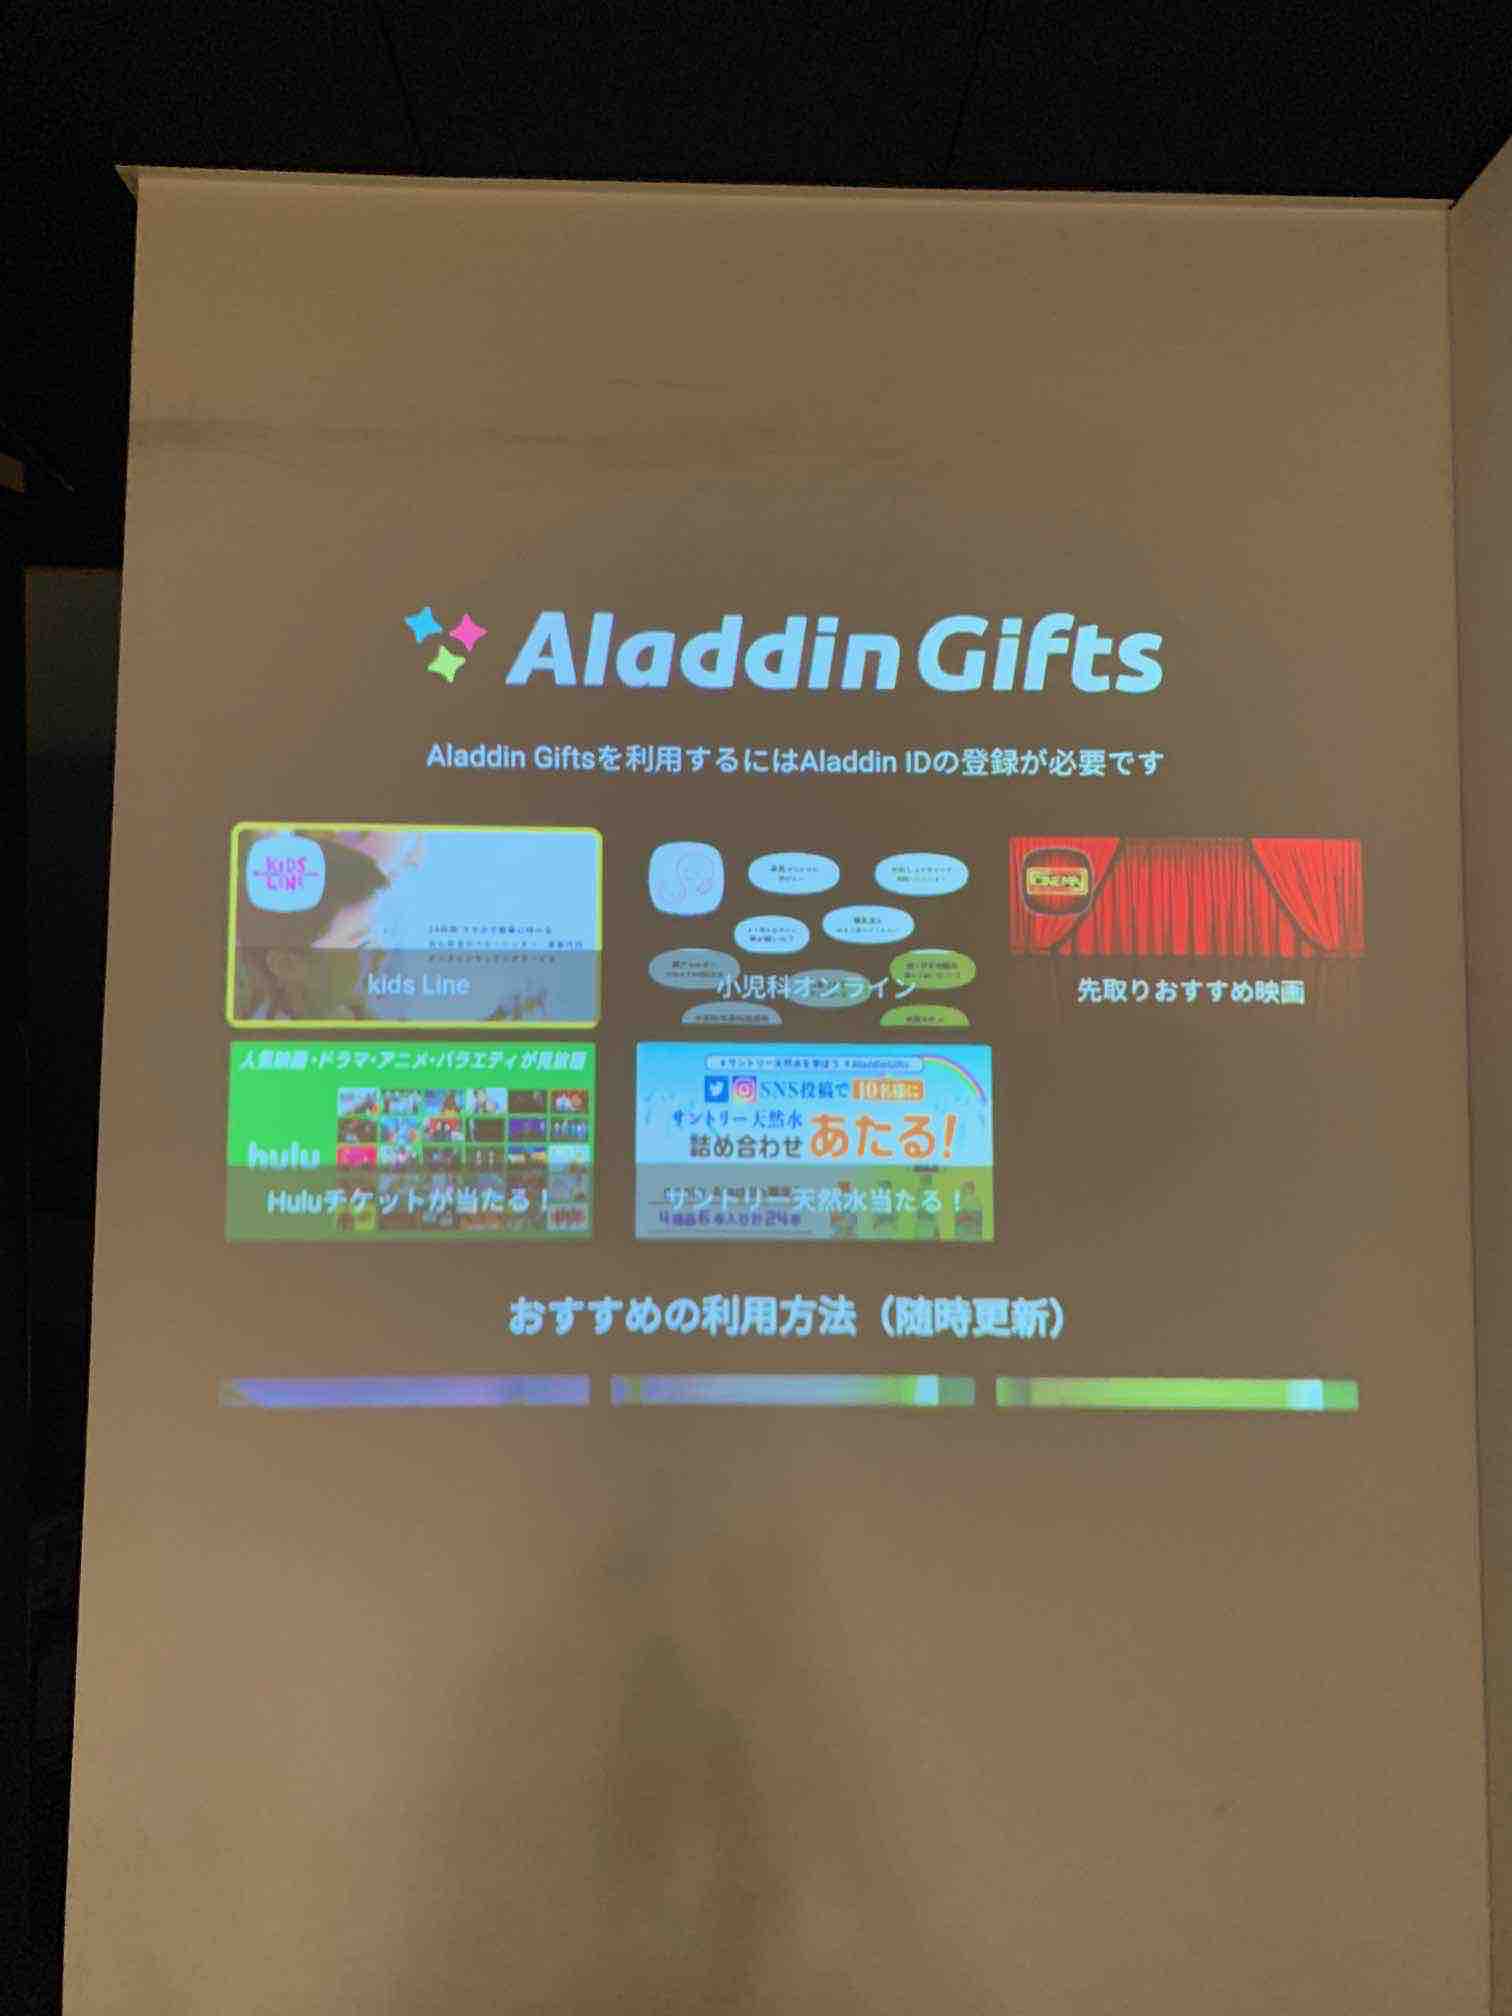 Popin Aladdin ポップイン アラジン Kurimomoponta ご質問ありがとうございます わかりづらくて 申し訳ございません ホーム画面にあるaladdin Discoveryアプリの Aladdin Gifts コーナーにも追加いたしました こちらから応募していただけます